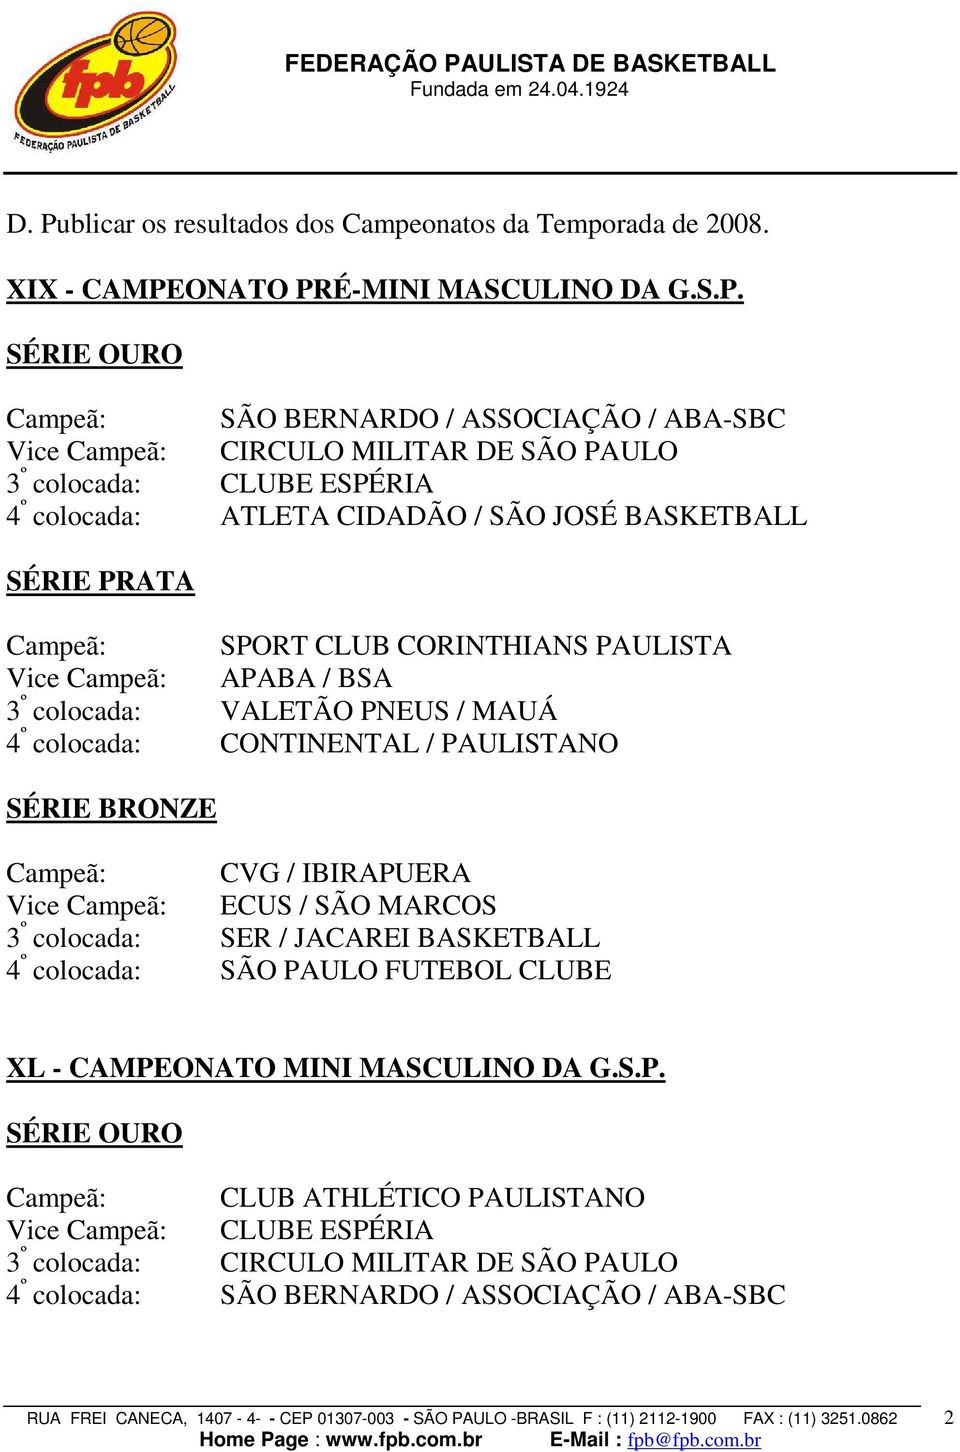 4 º colocada: CONTINENTAL / PAULISTANO SÉRIE BRONZE Campeã: CVG / IBIRAPUERA Vice Campeã: ECUS / SÃO MARCOS 3 º colocada: SER / JACAREI BASKETBALL 4 º colocada: SÃO PAULO FUTEBOL CLUBE XL